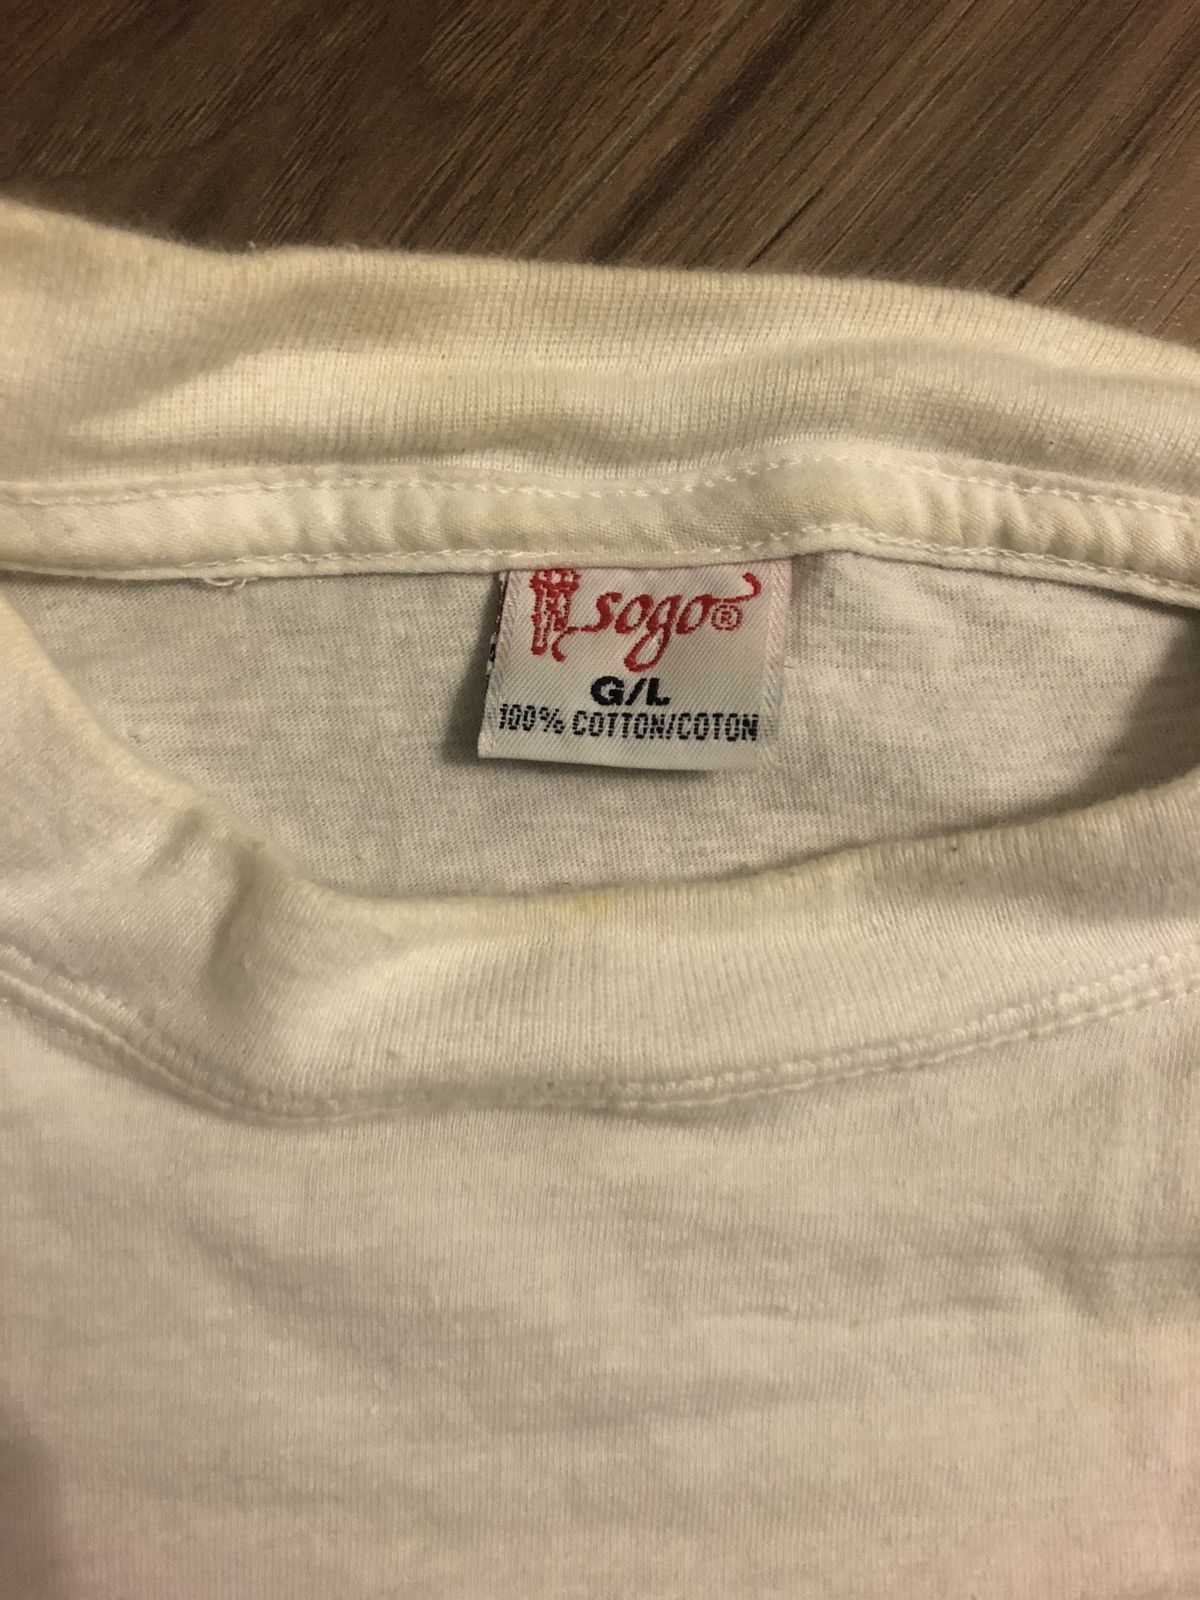 Vintage Vintage 1996 Spam Tshirt Size US L / EU 52-54 / 3 - 4 Preview